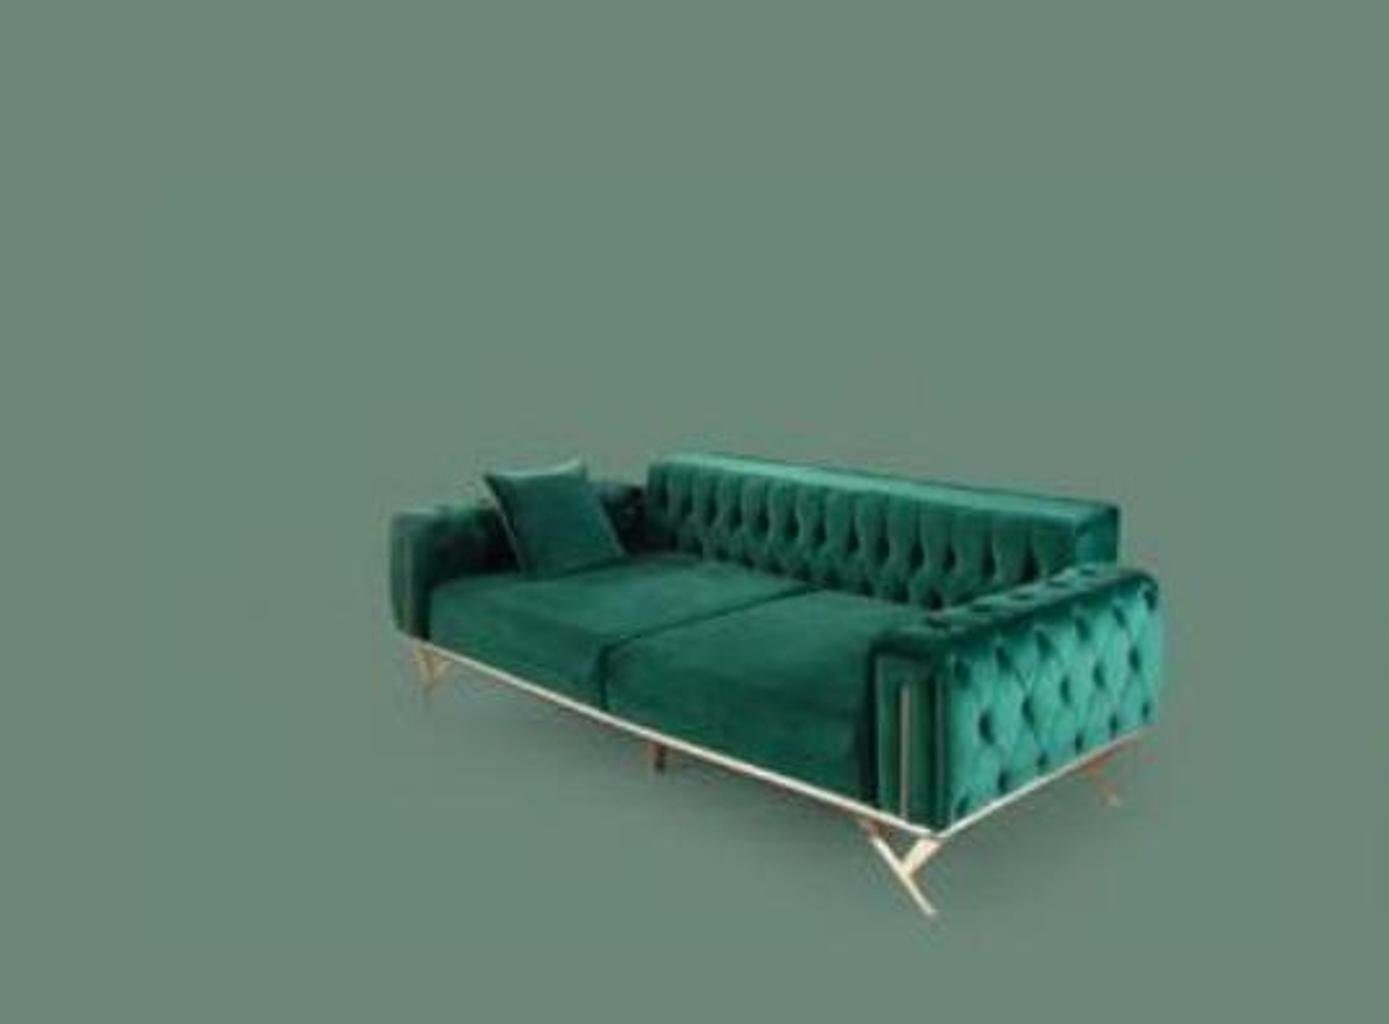 Made in Sofa Chesterfield JVmoebel Europe Grüne Sitzpolster Dreisitzer Möbel, Couch